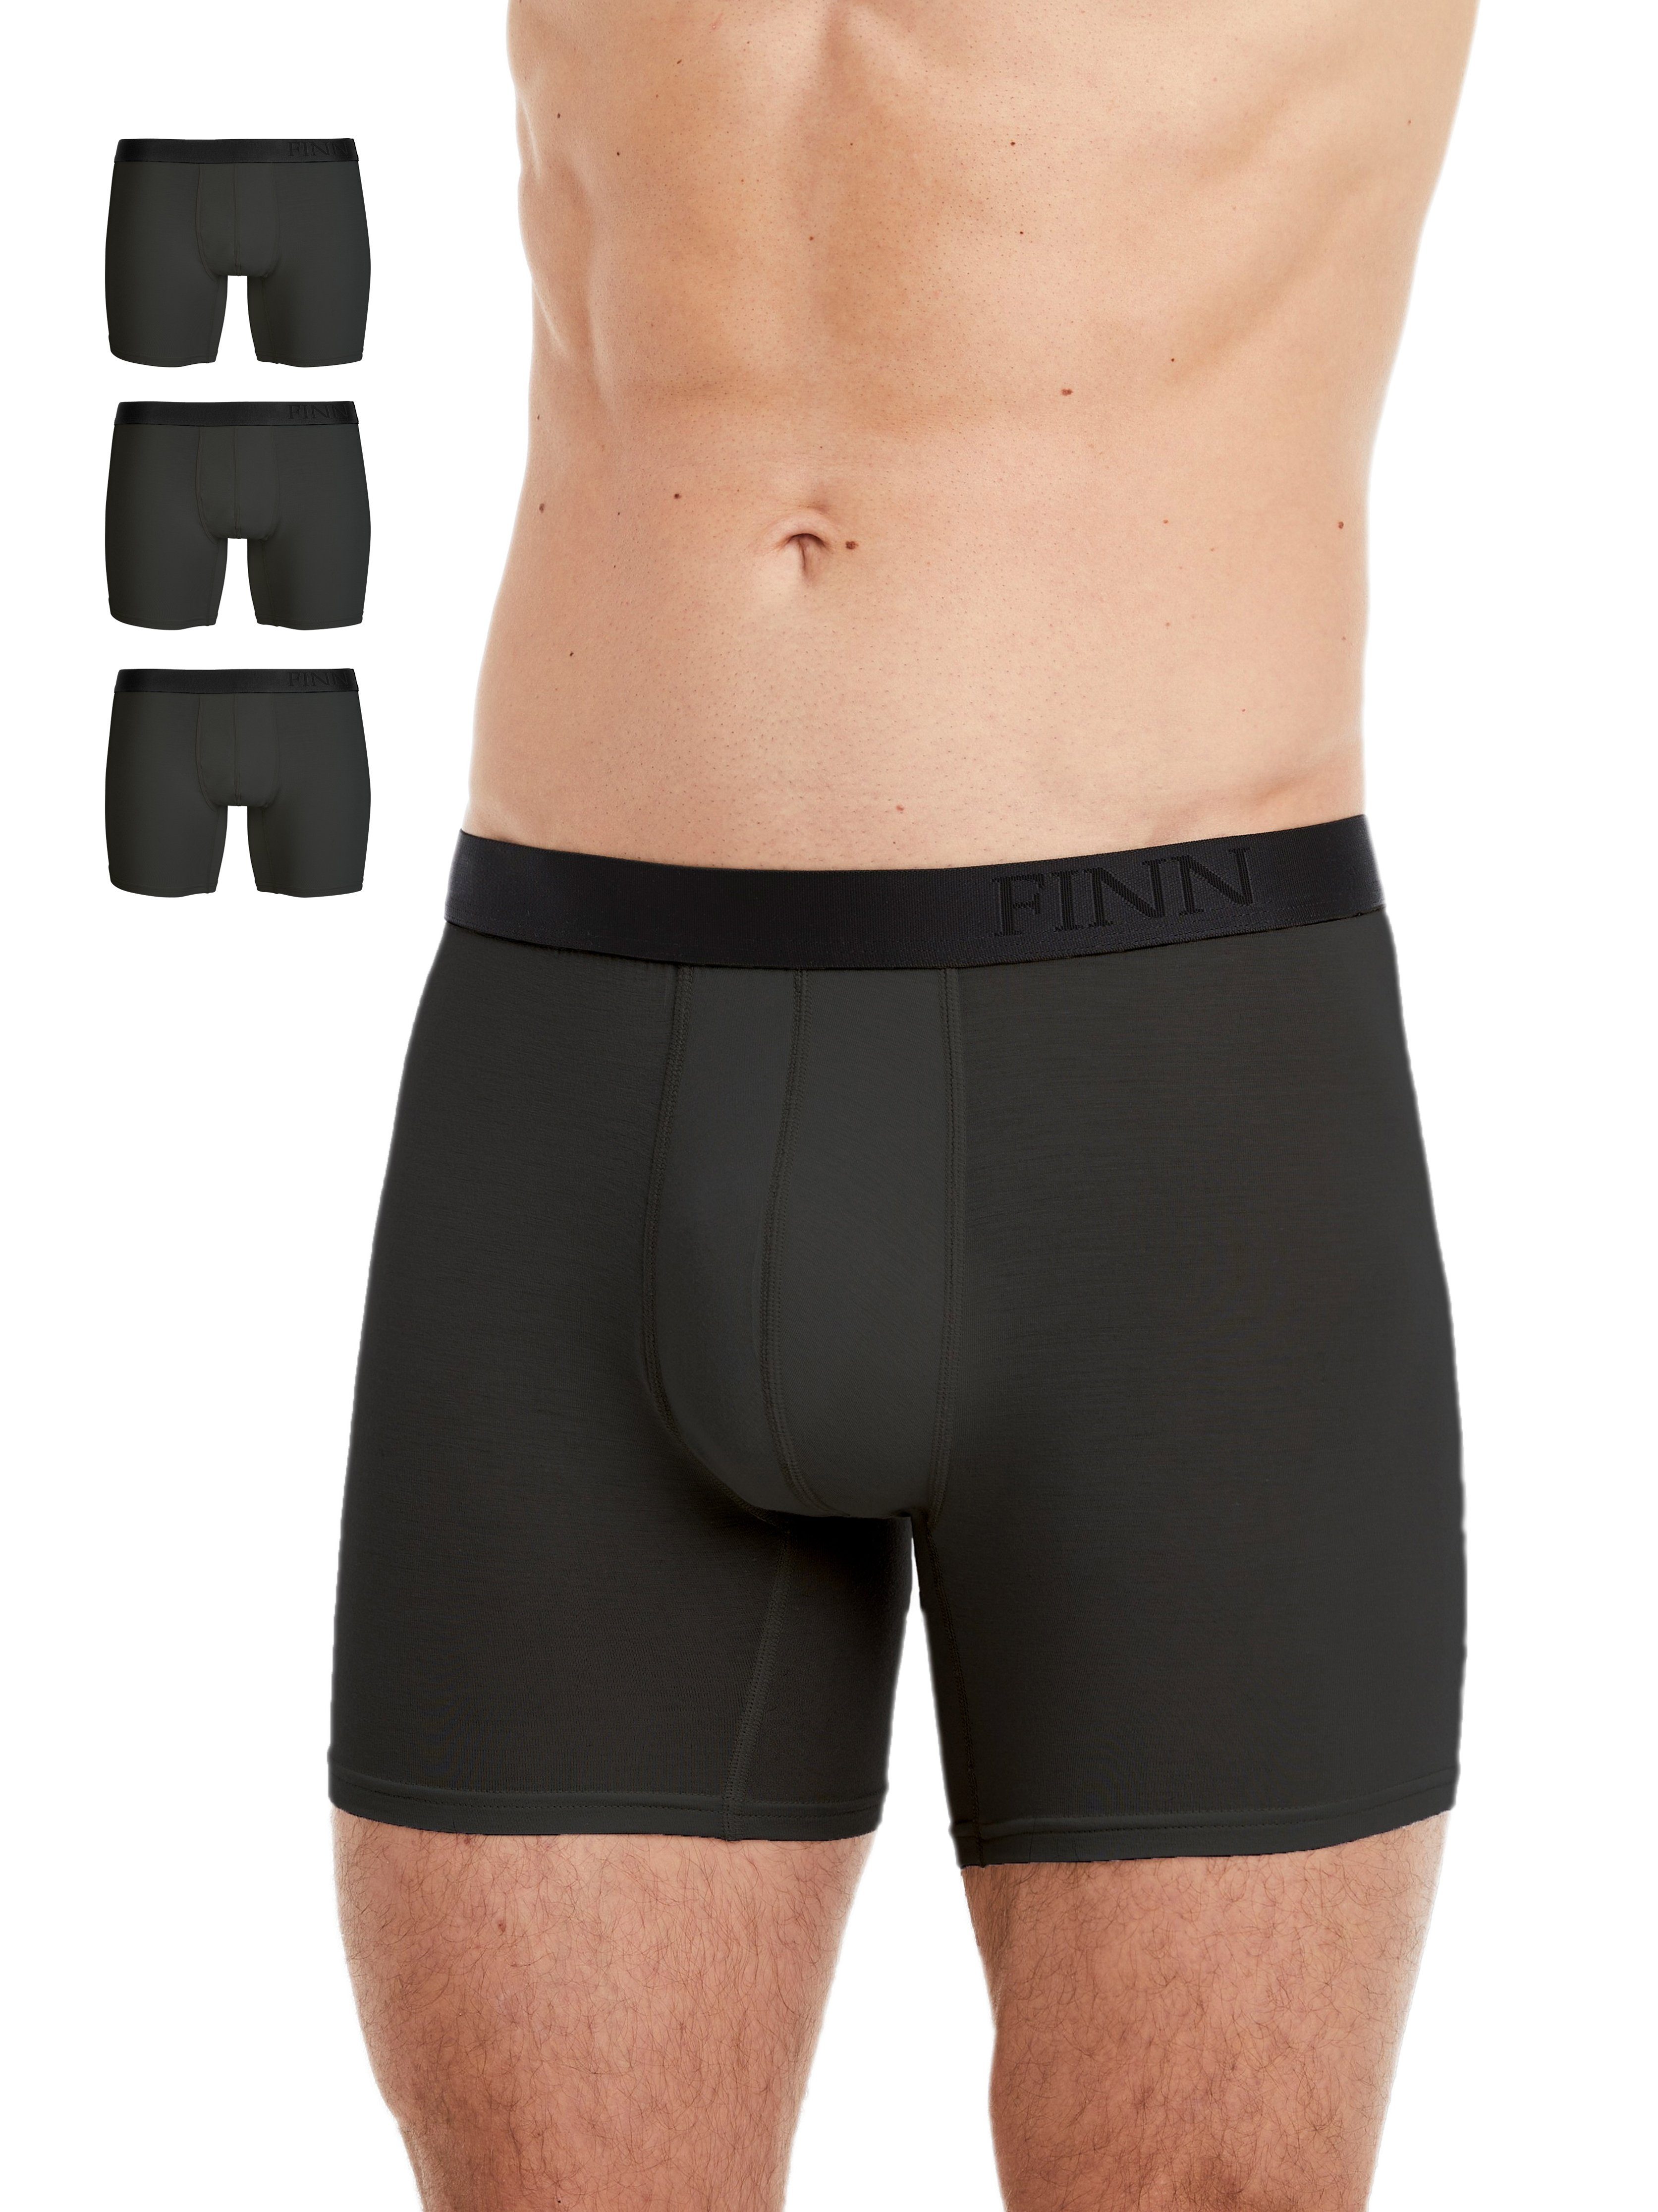 FINN Design Boxershorts 3er Pack Boxershorts Herren feiner Micro-Modal Stoff, extra weicher Bund mit Prägung Grau